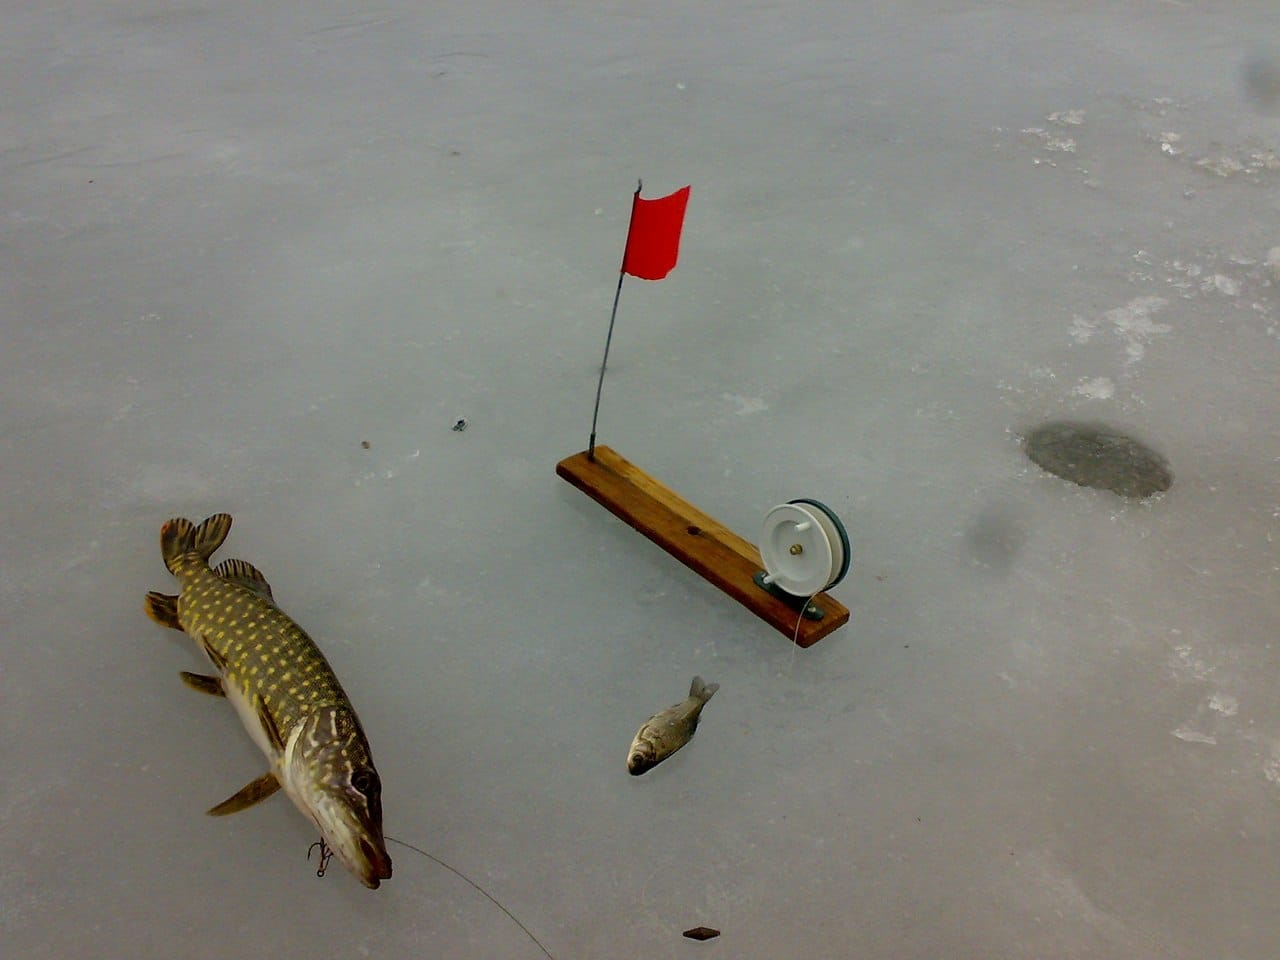 Рыбалка зимой на течении - тактика поиска на реке, снасти, подача